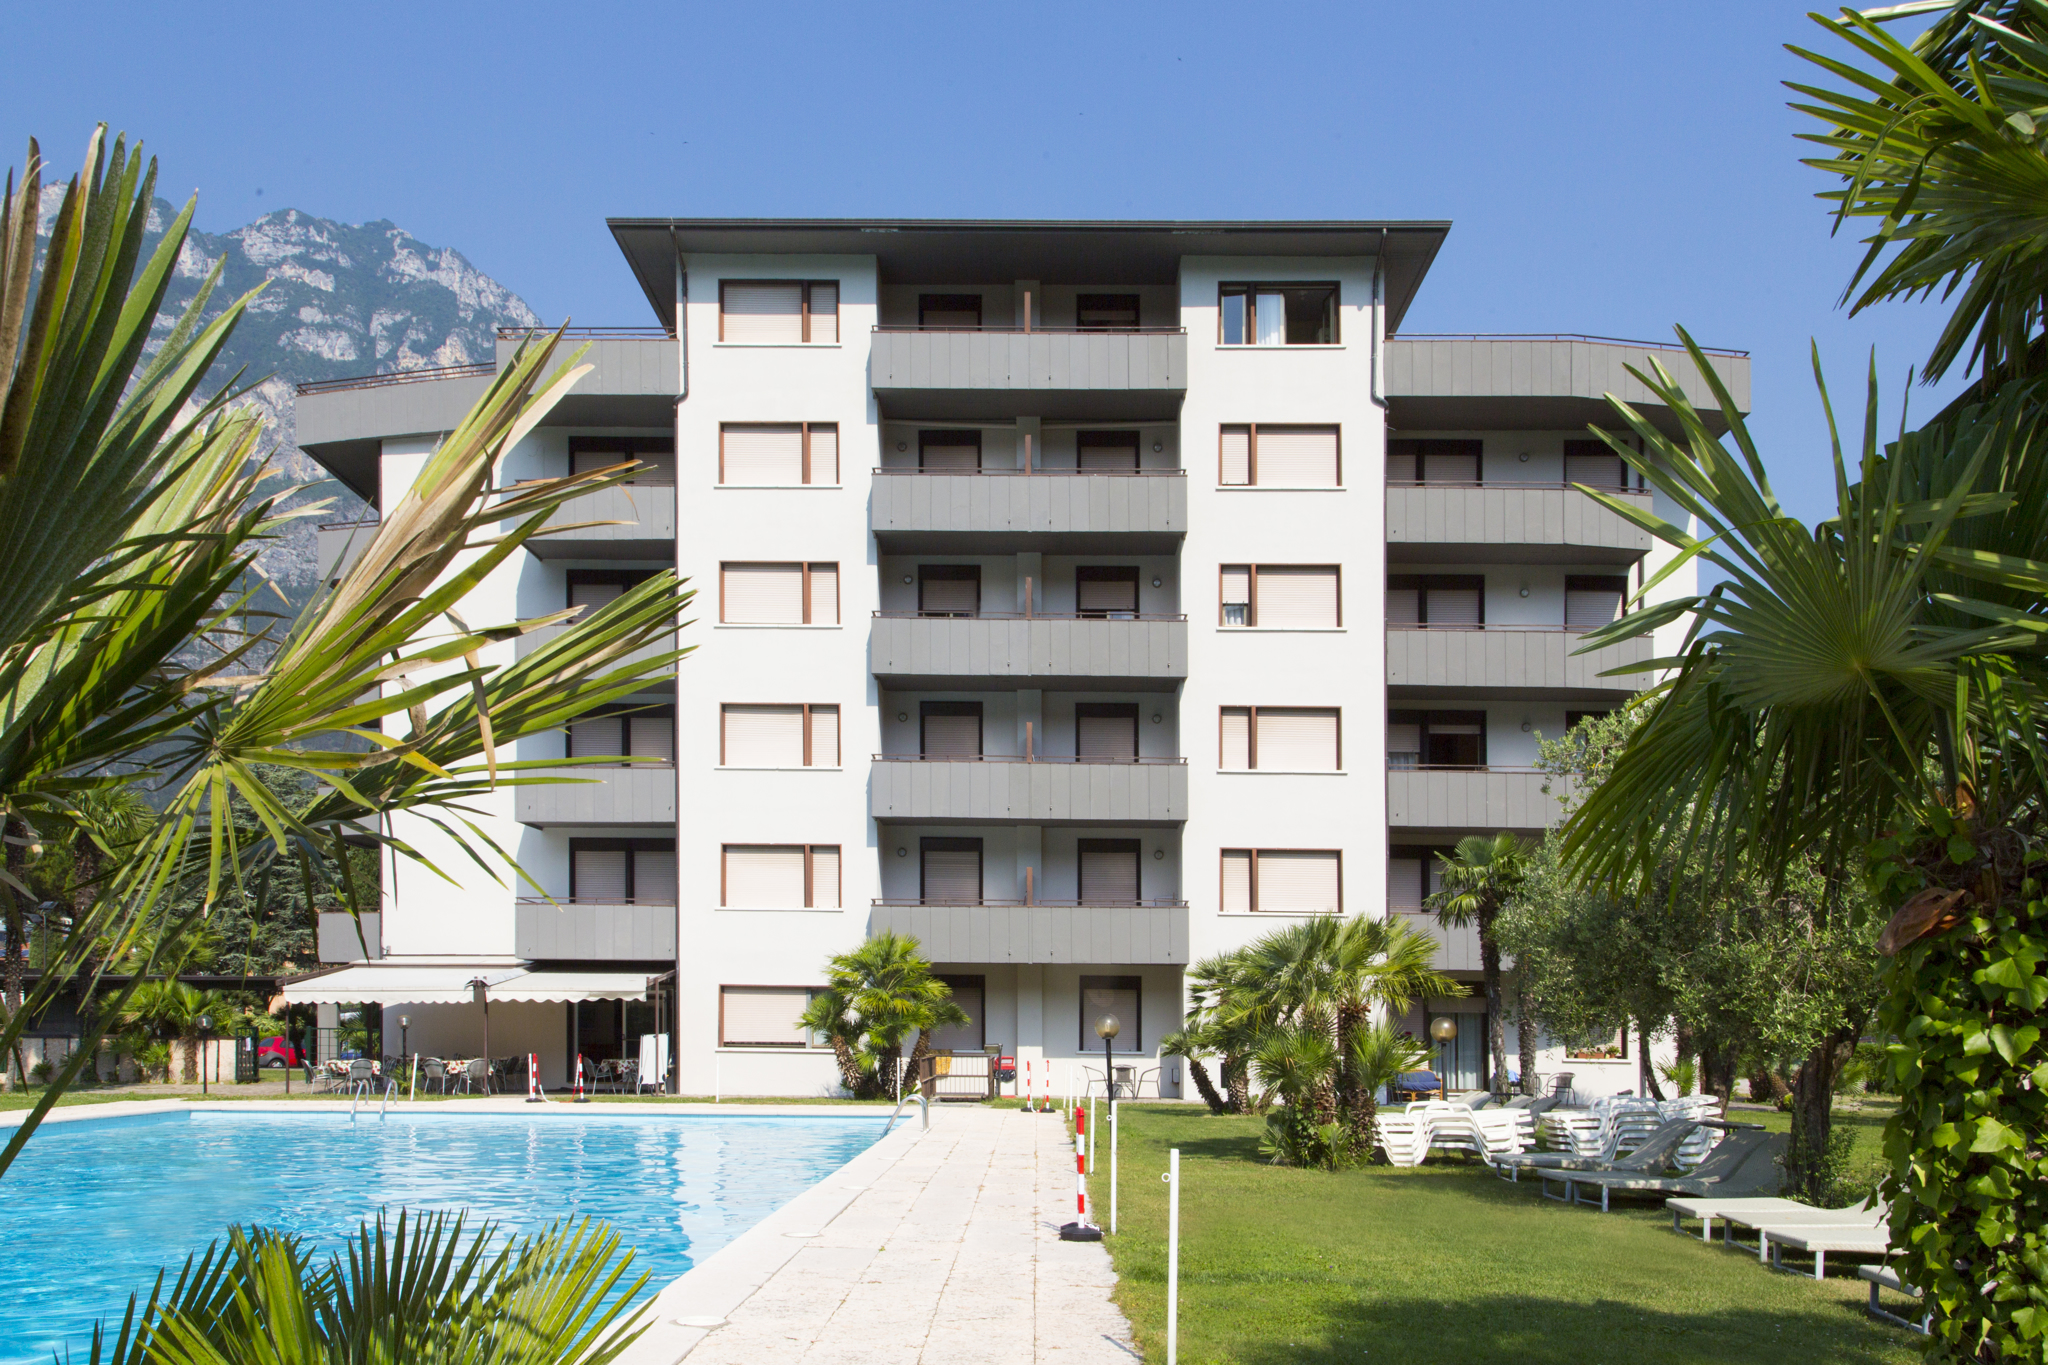 Ferienwohnung mit Balkon und Schwimmbad  in Italien